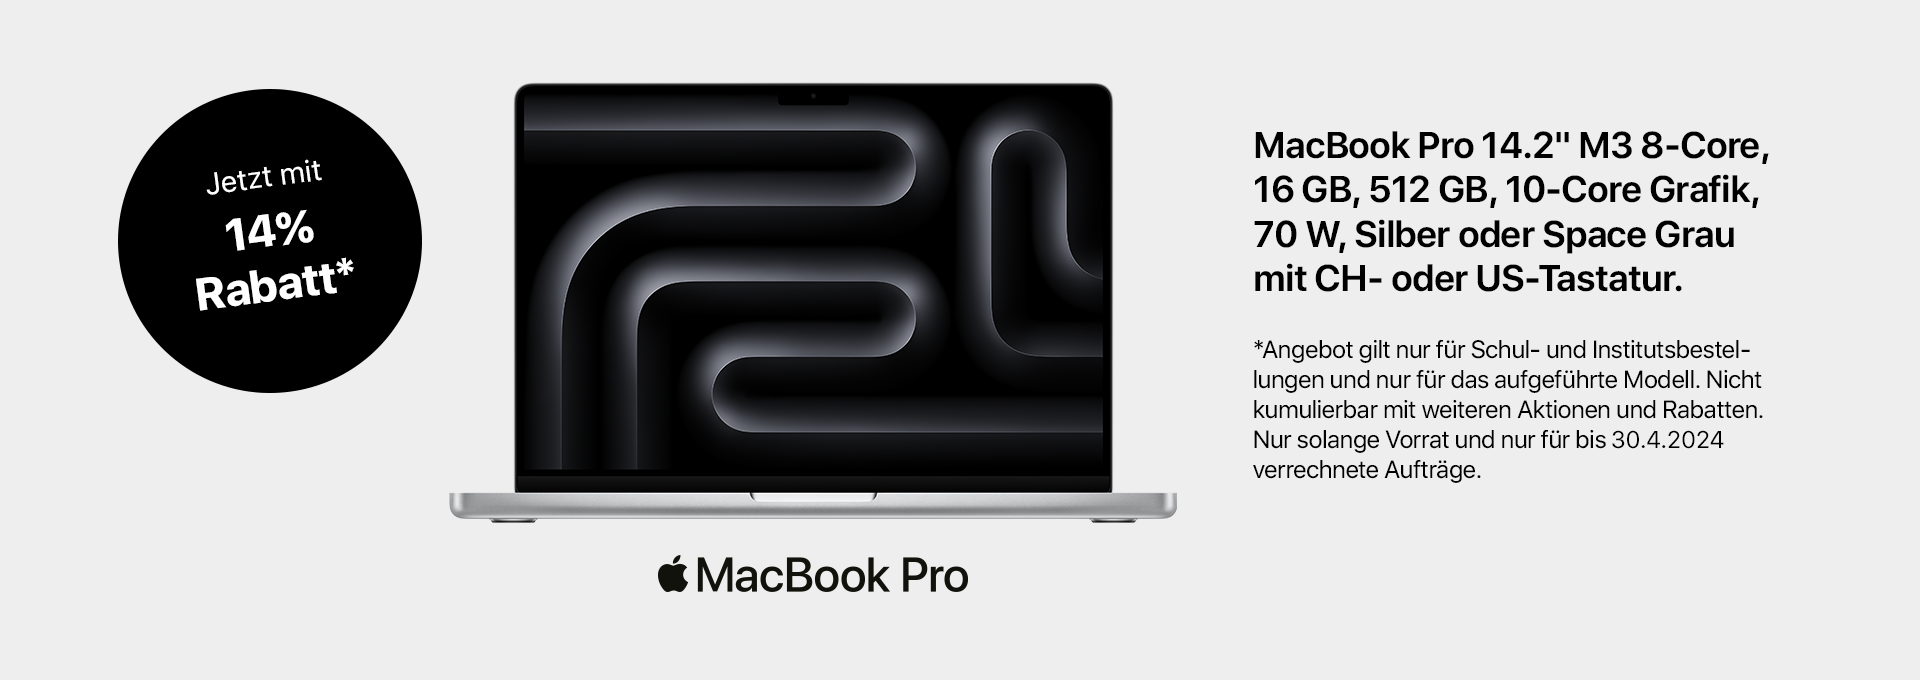 MacBook DG Promotion EDU 14 Prozent